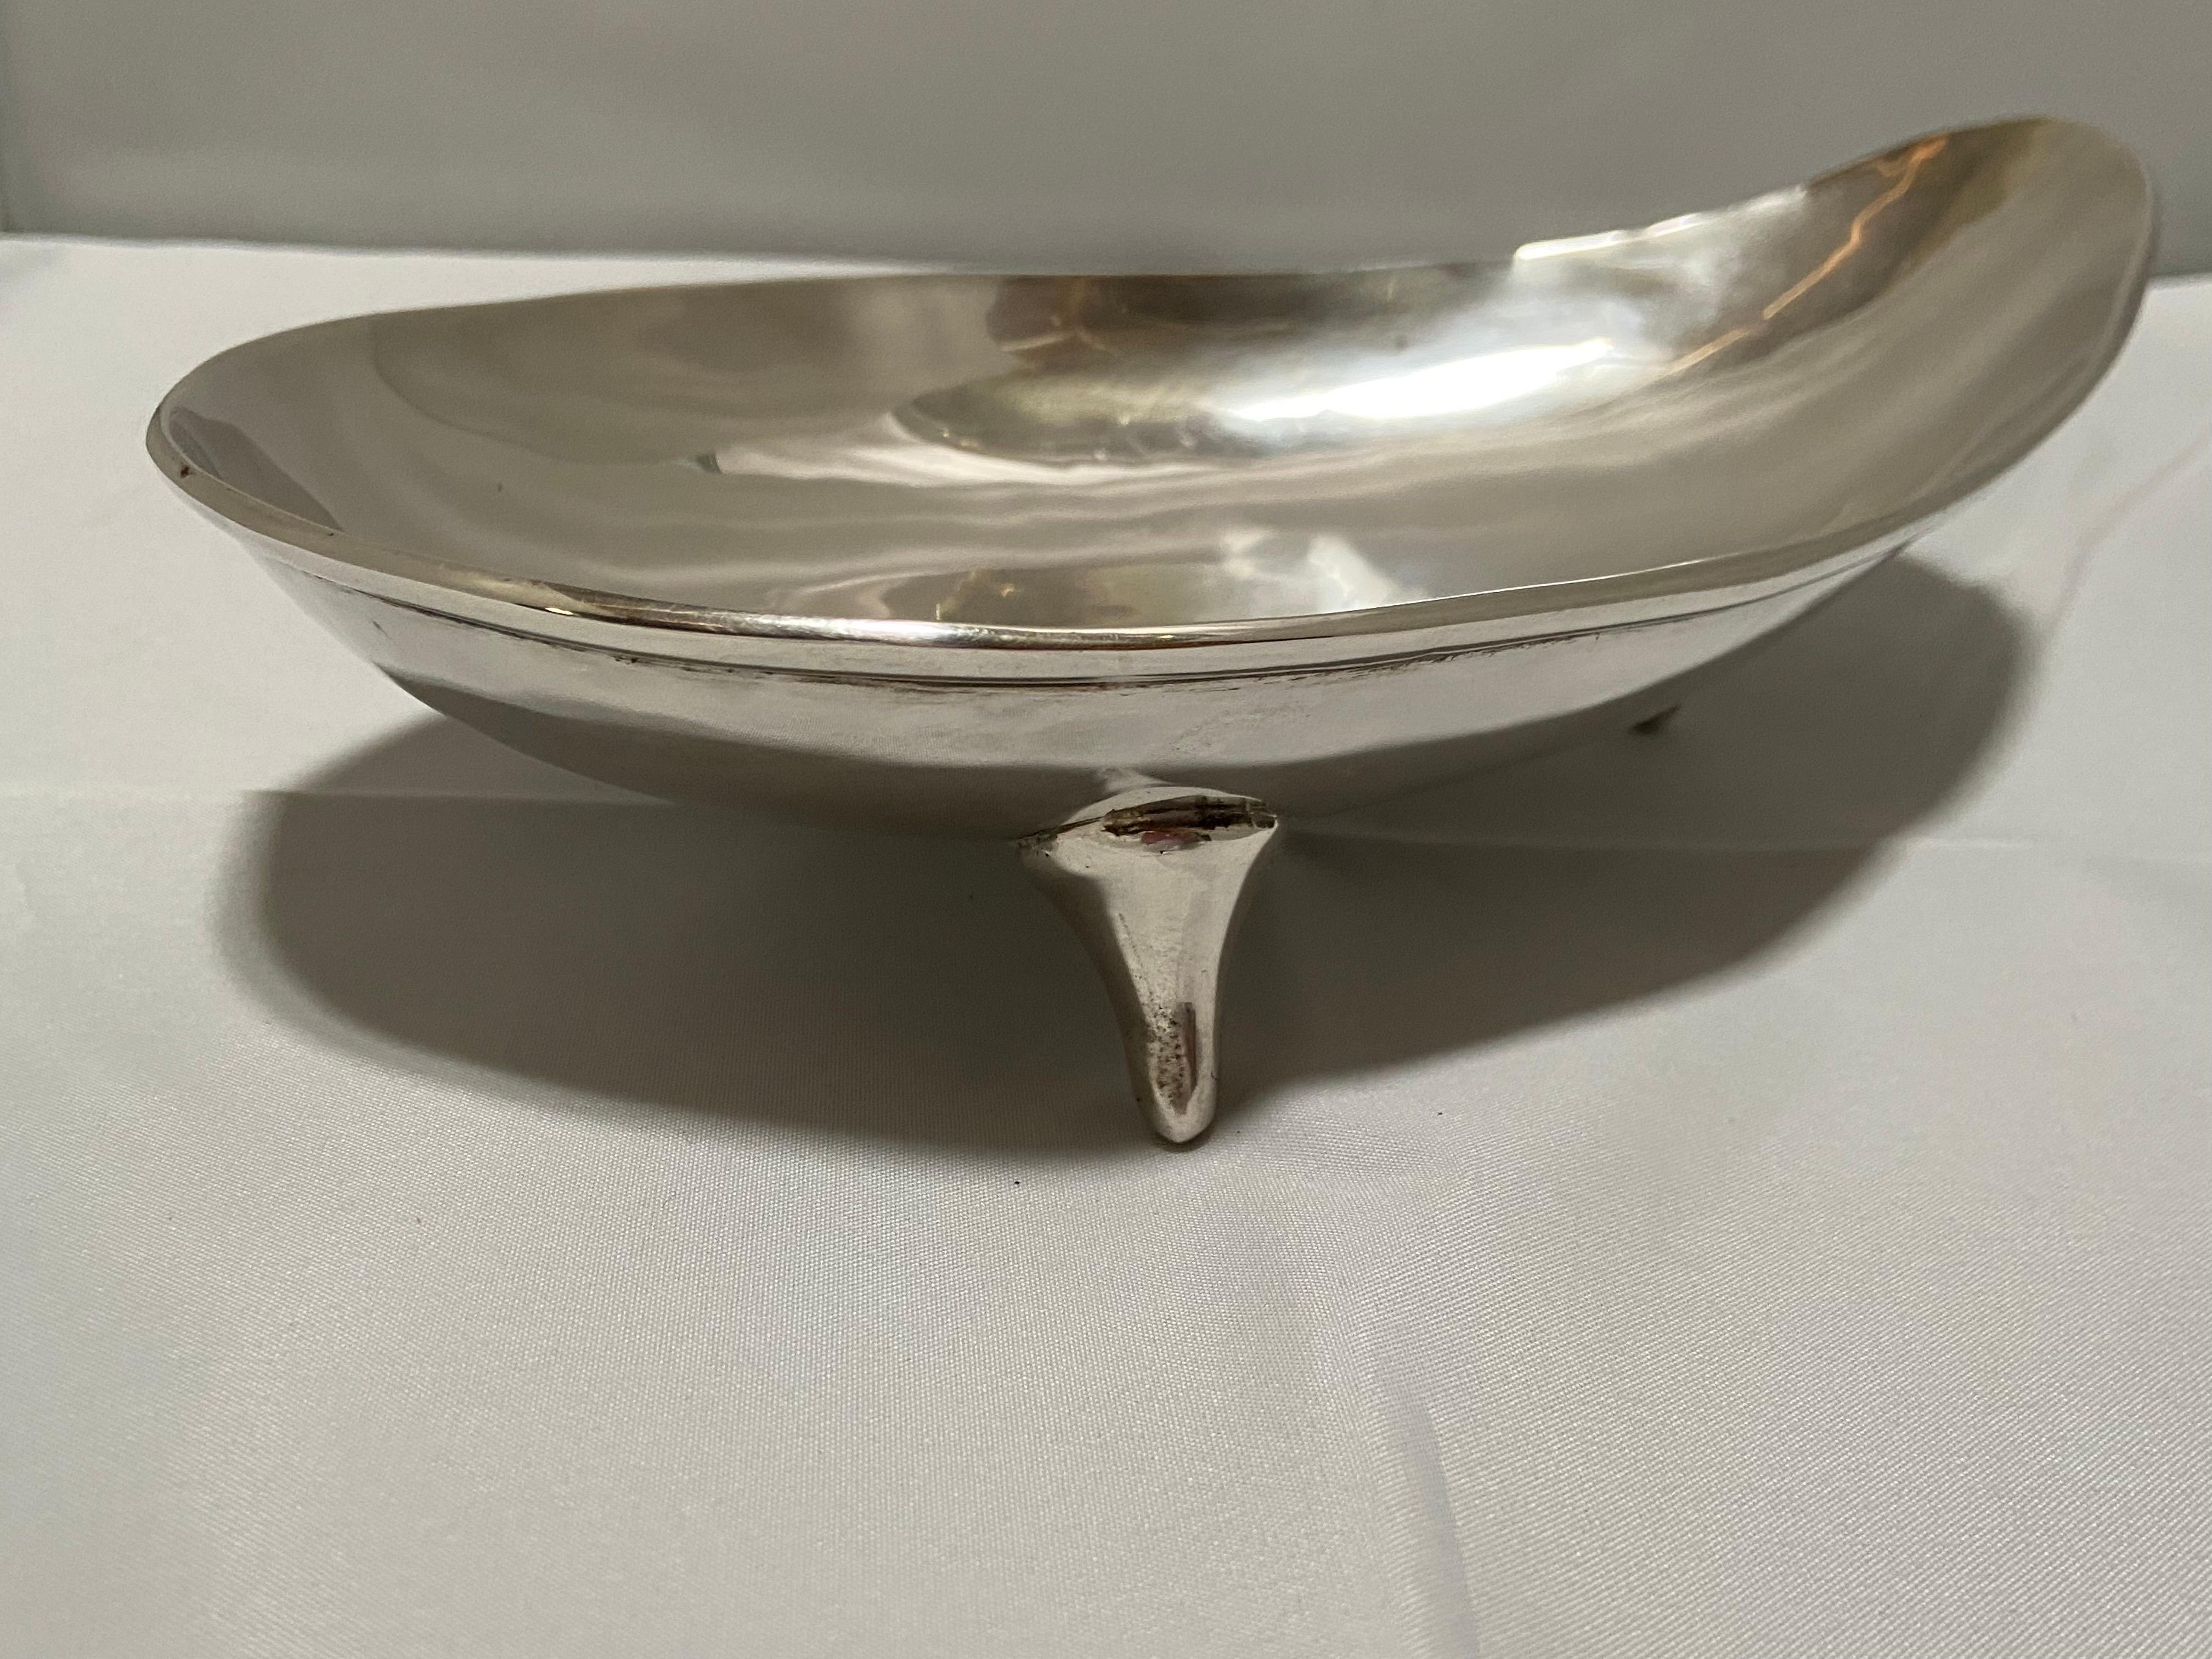 Ein Vintage, Mid-Century Modern Mexican Sterling Silber drei Fuß Schale oder Schüssel von der Hersteller, C. Zurita. Diese Schale im modernistischen Stil mit fließenden Linien und schickem Design ist eine Anspielung auf die gleichnamige Designfirma